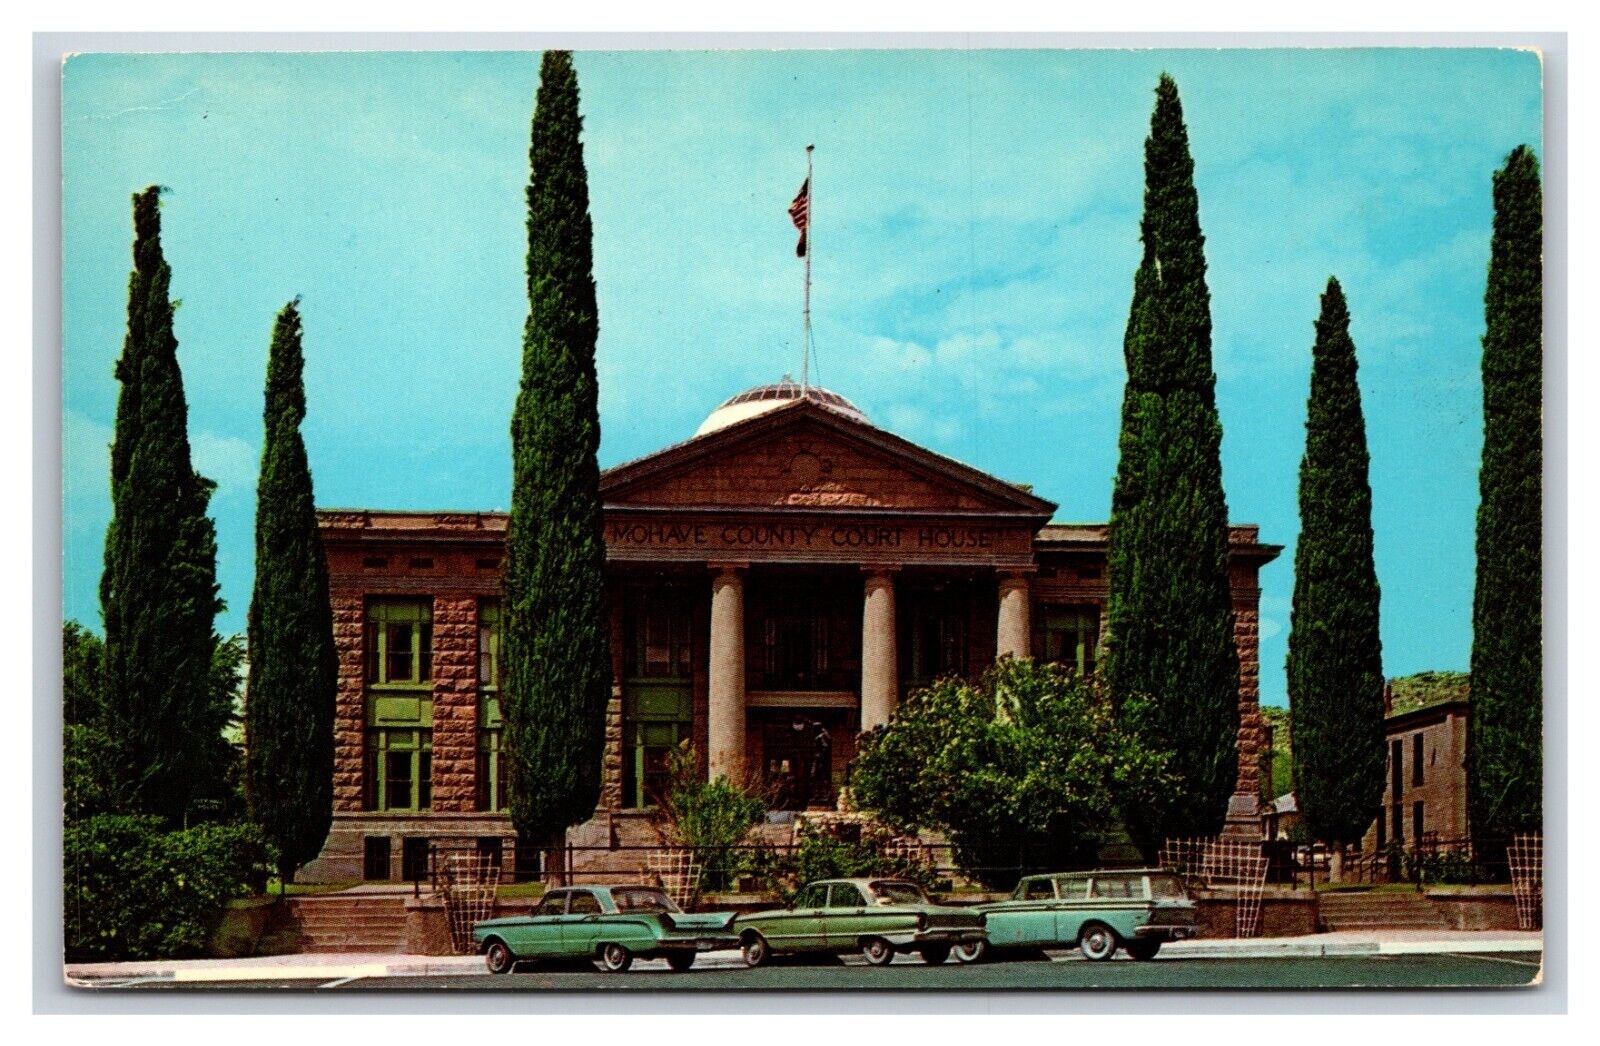 Mohave County Courthouse Kingman Arizona AZ UNP Chrome Postcard S11